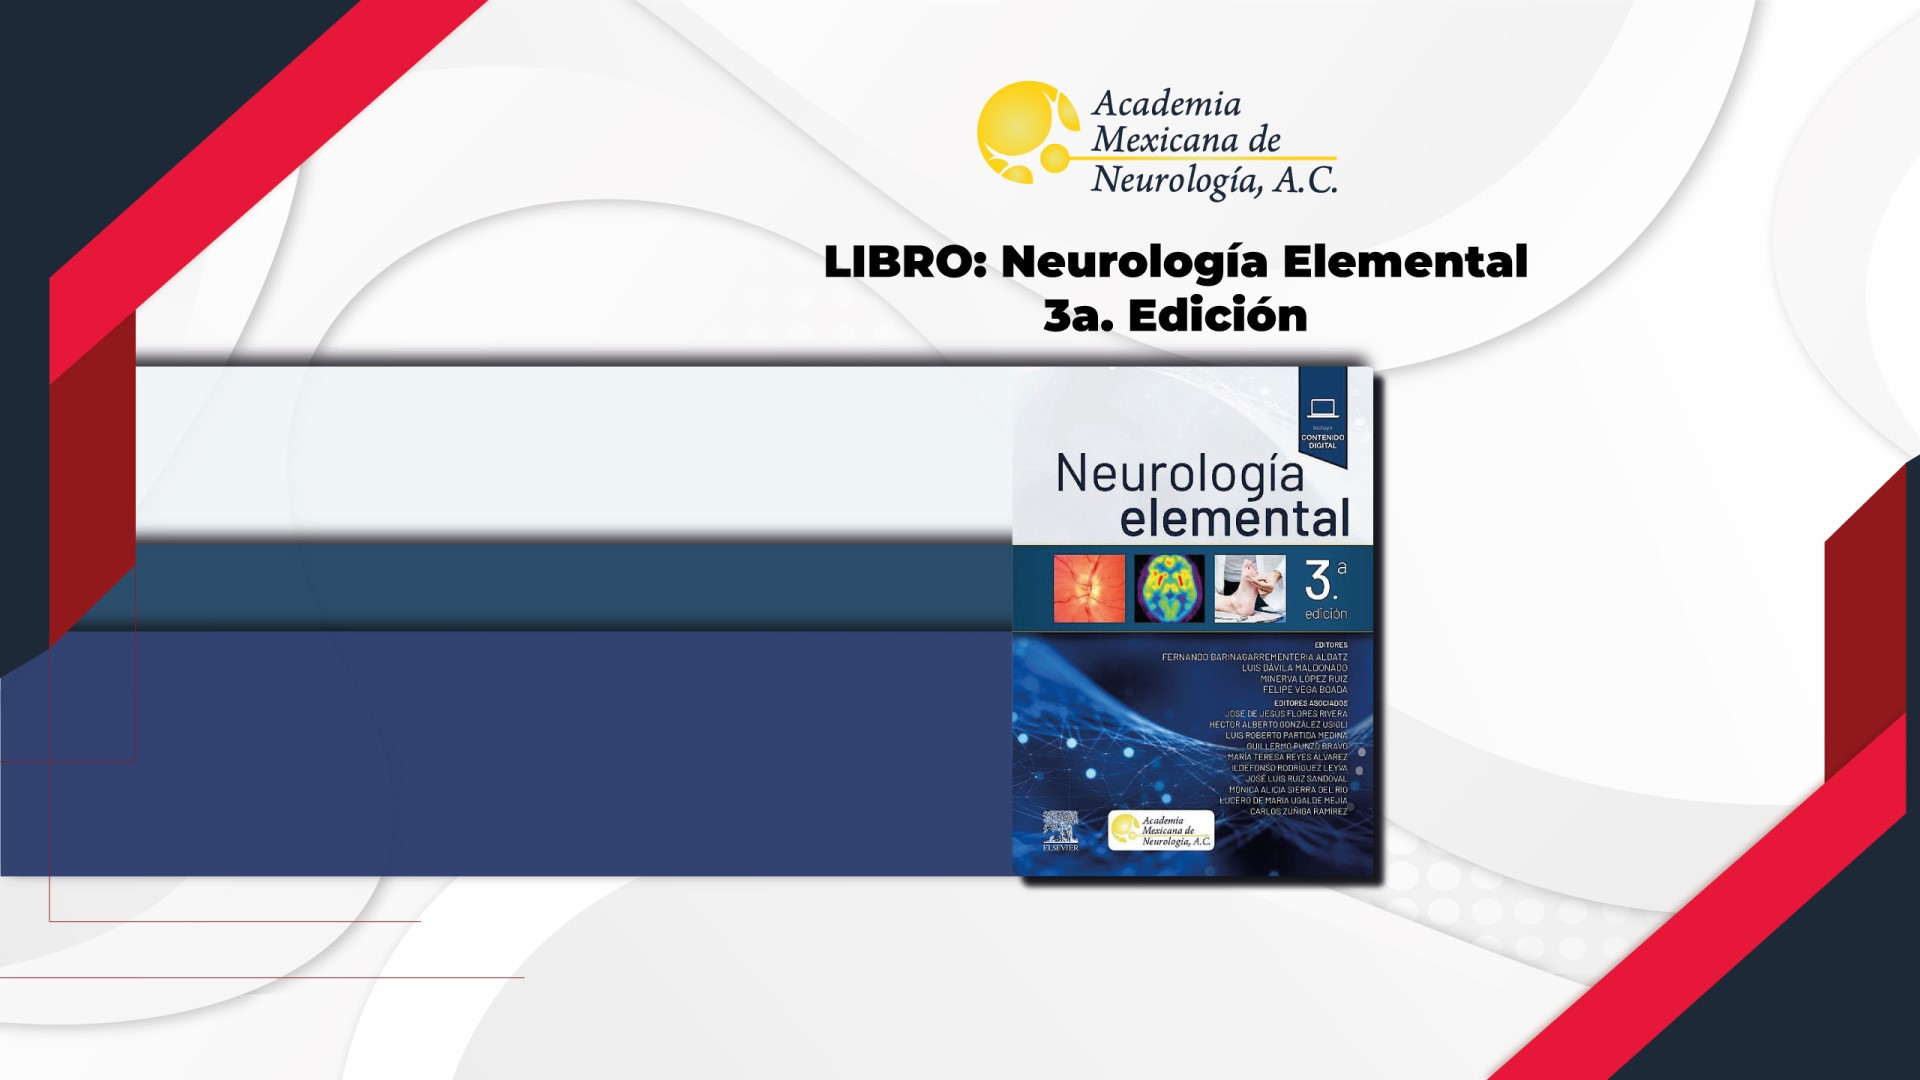 LIBRO: Neurología Elemental 3a. Edición